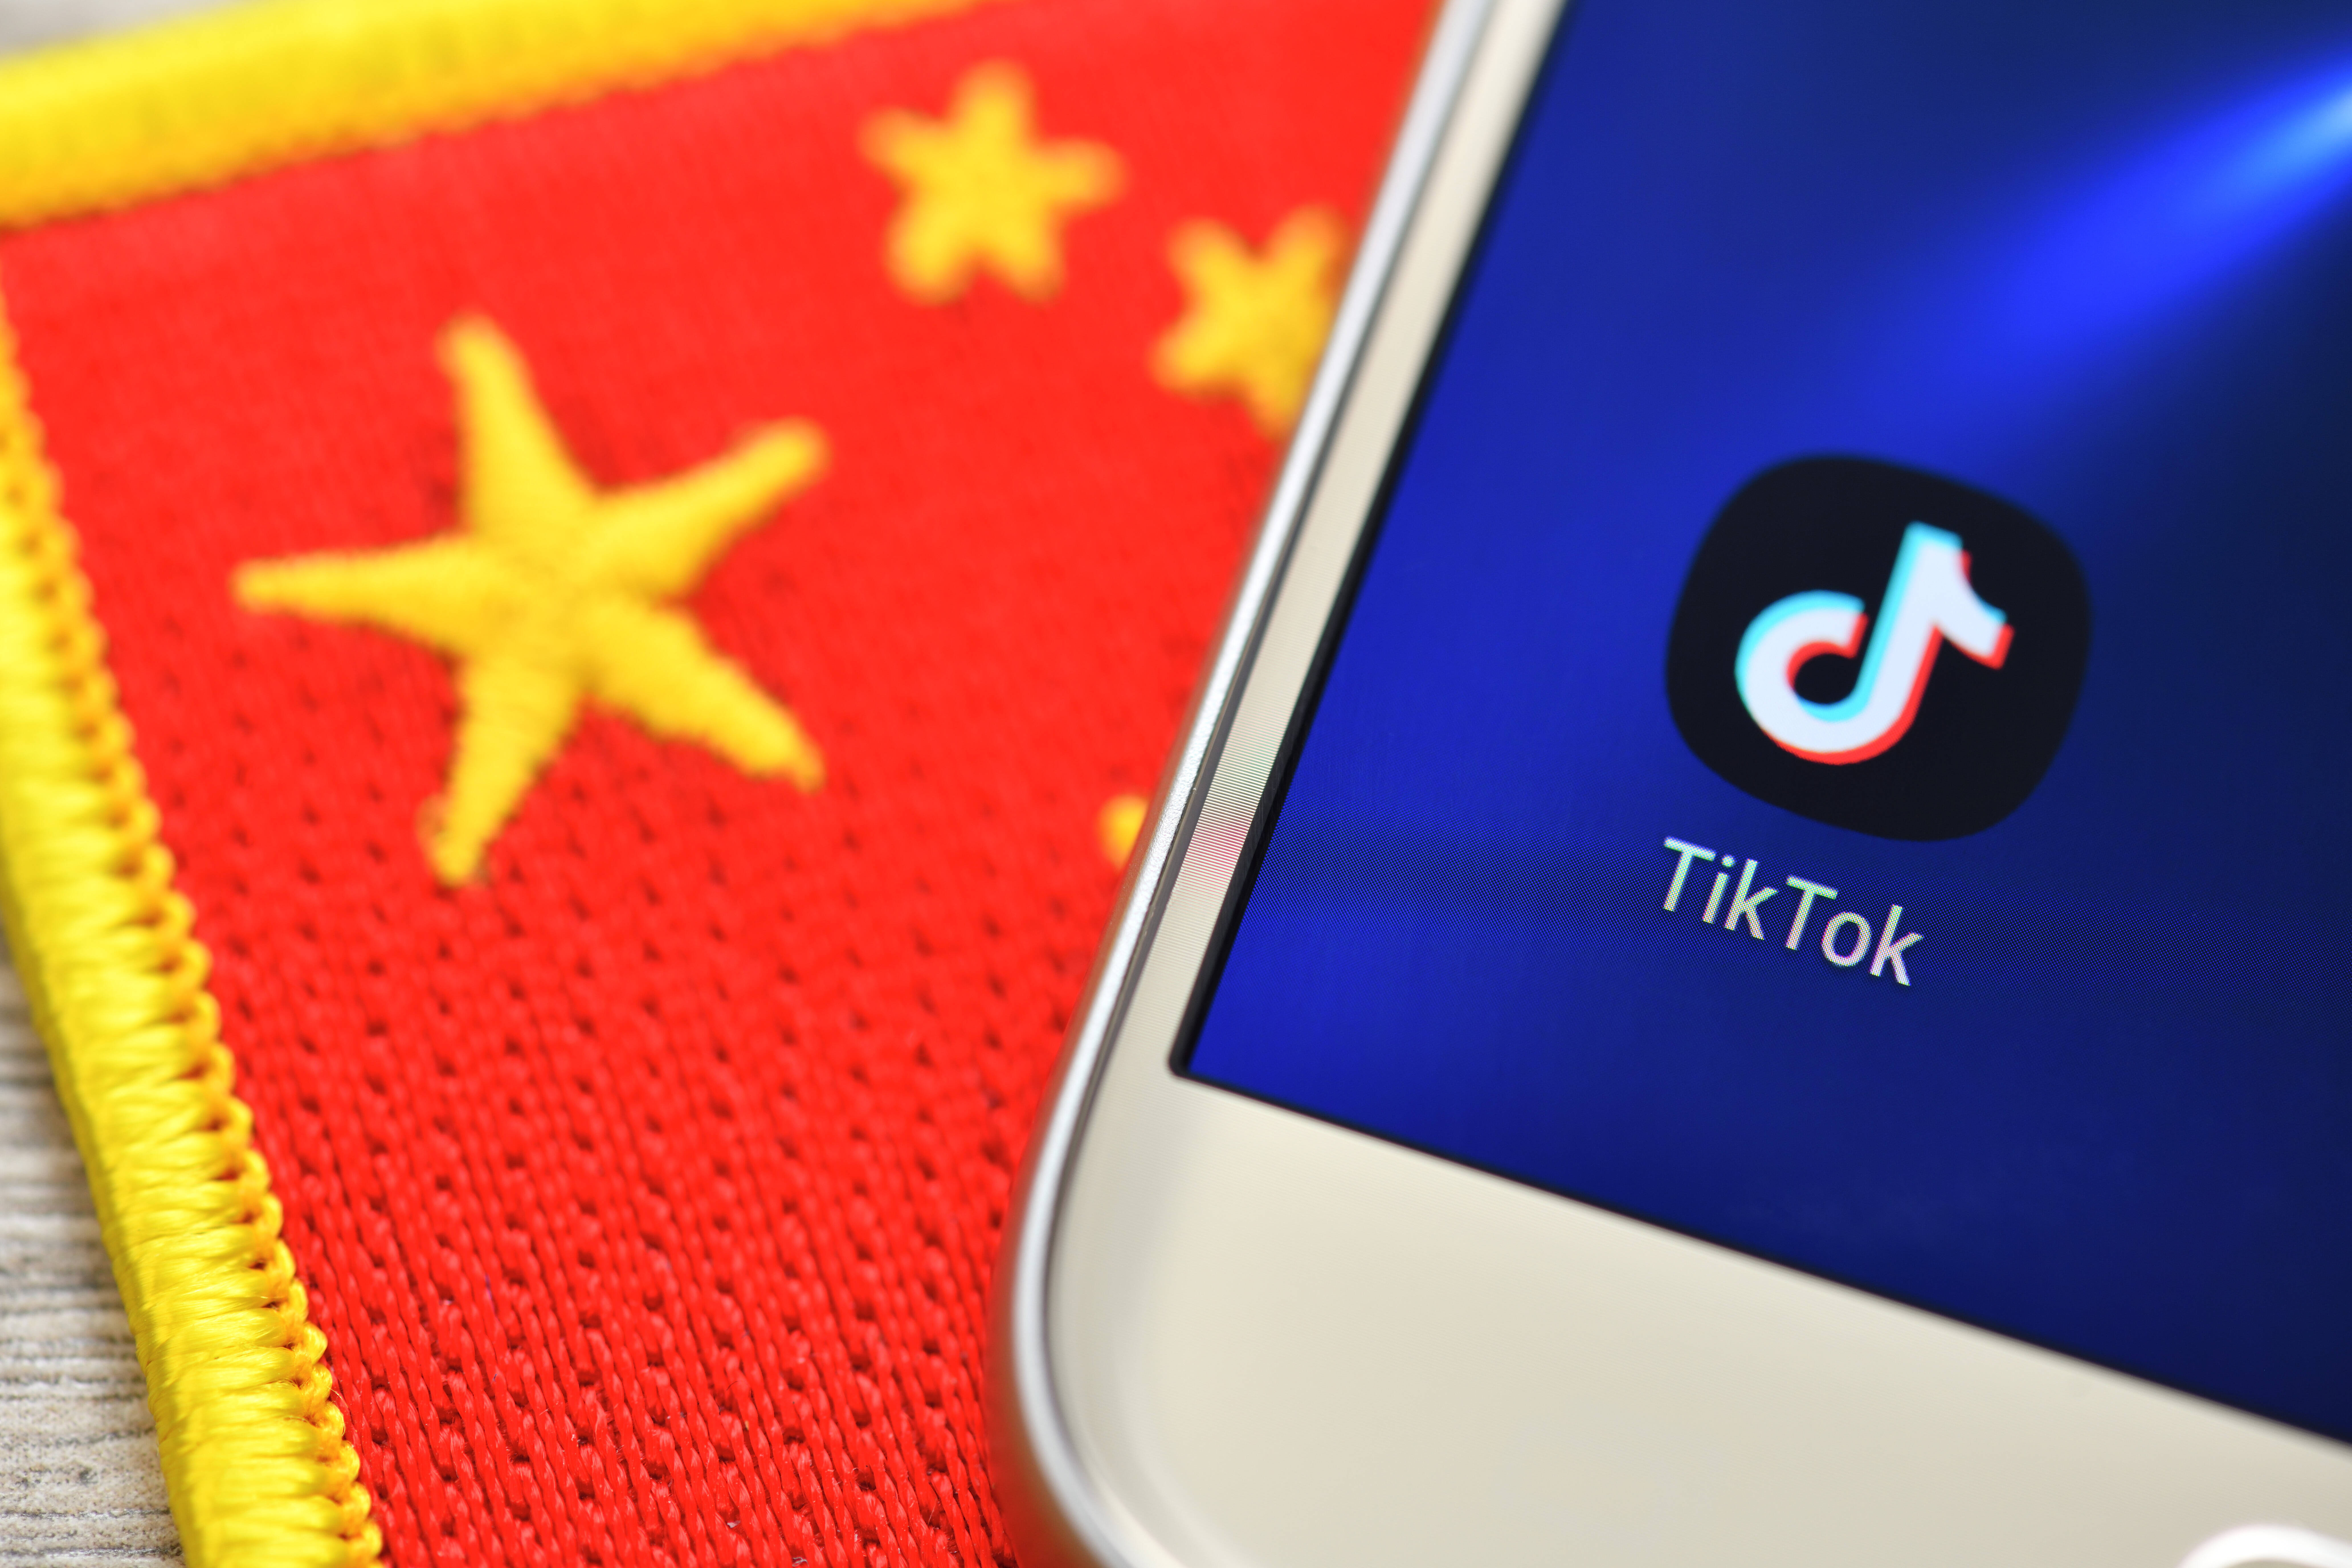 TikTok gehört einem chinesischen Tech-Unternehmen – das weckt Sorgen vor Datenspionage.